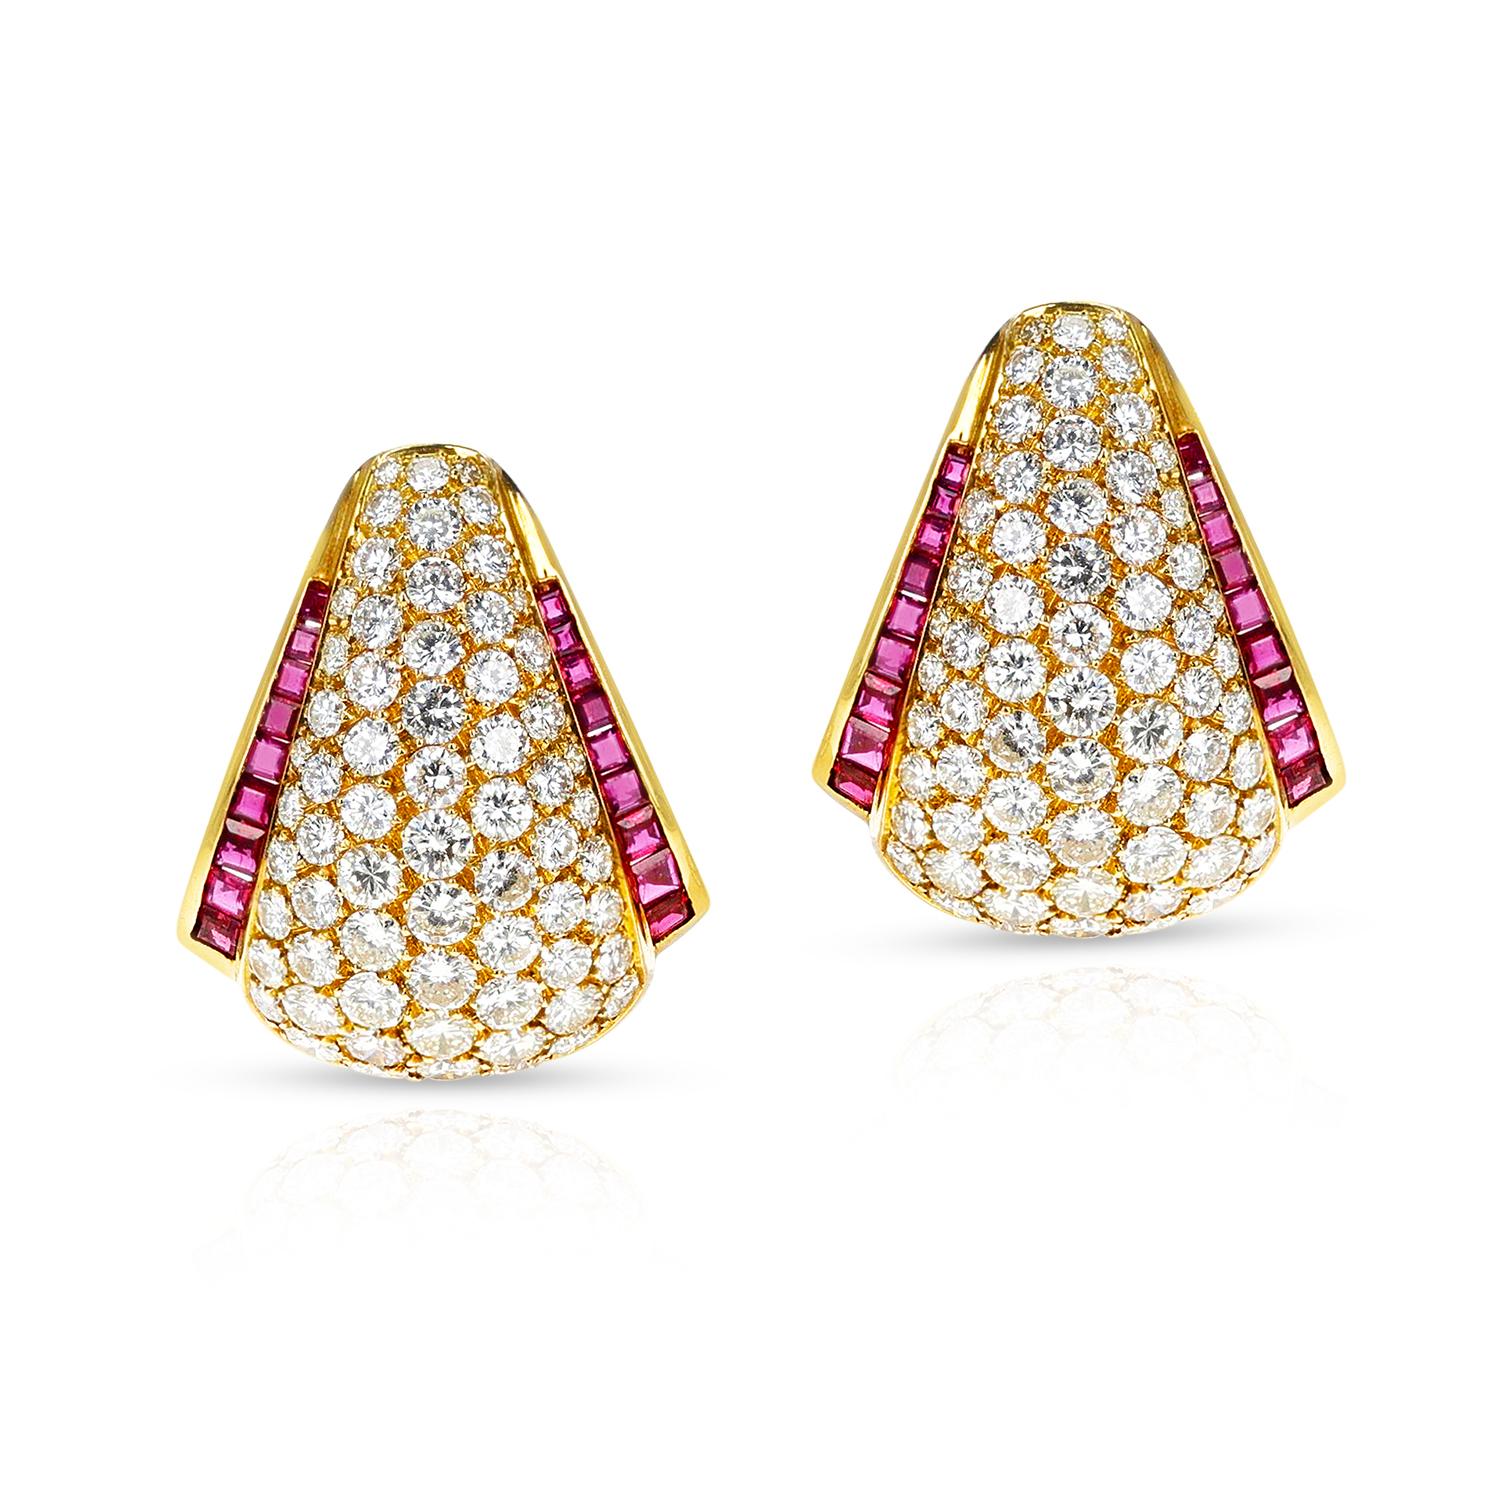 Ein Paar Van Cleef & Arpels Cocktail-Ohrringe mit Diamanten und Rubinen aus 18 Karat Gelbgold. Die Ohrringe sind aus den 1960er Jahren. Das Gesamtgewicht des Ohrrings beträgt 31,70 Gramm. Die Diamanten wiegen ca. 13 Karat und die Rubine ca. 2 Karat.